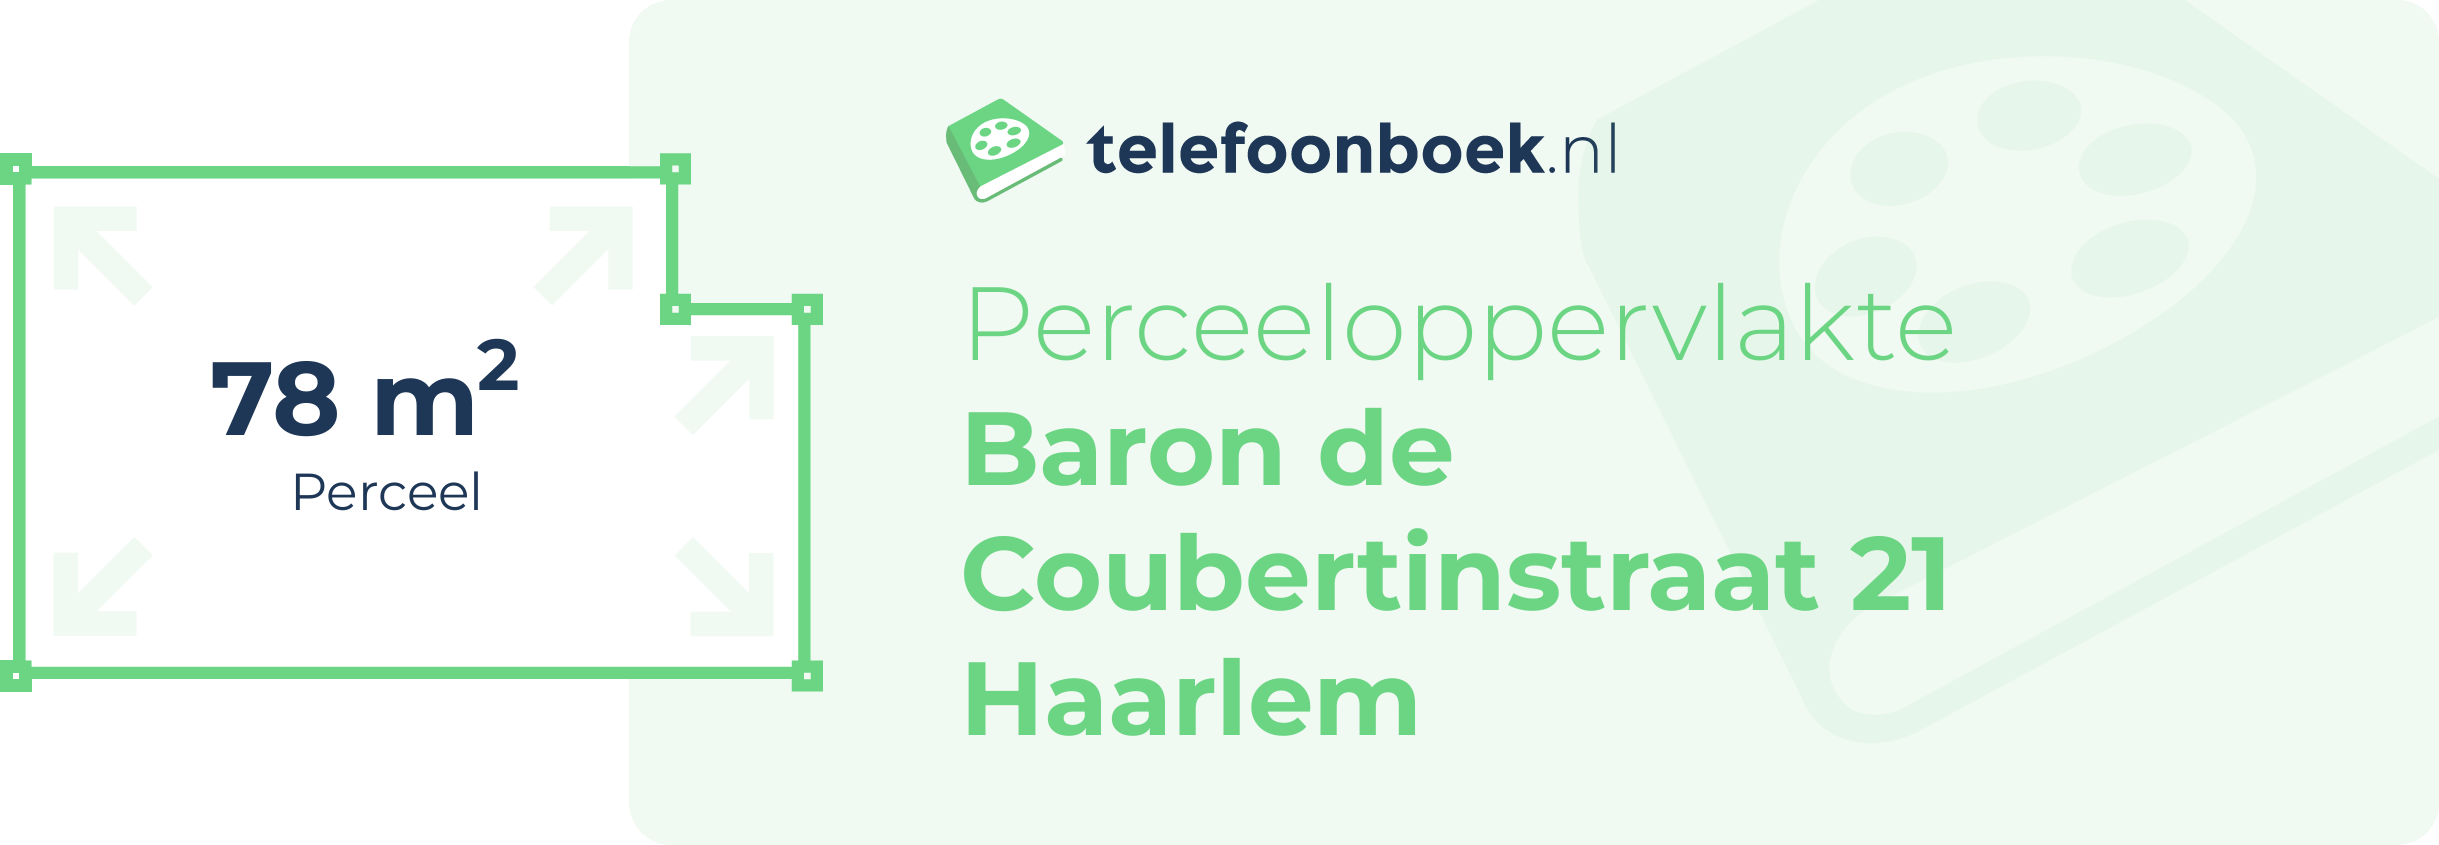 Perceeloppervlakte Baron De Coubertinstraat 21 Haarlem